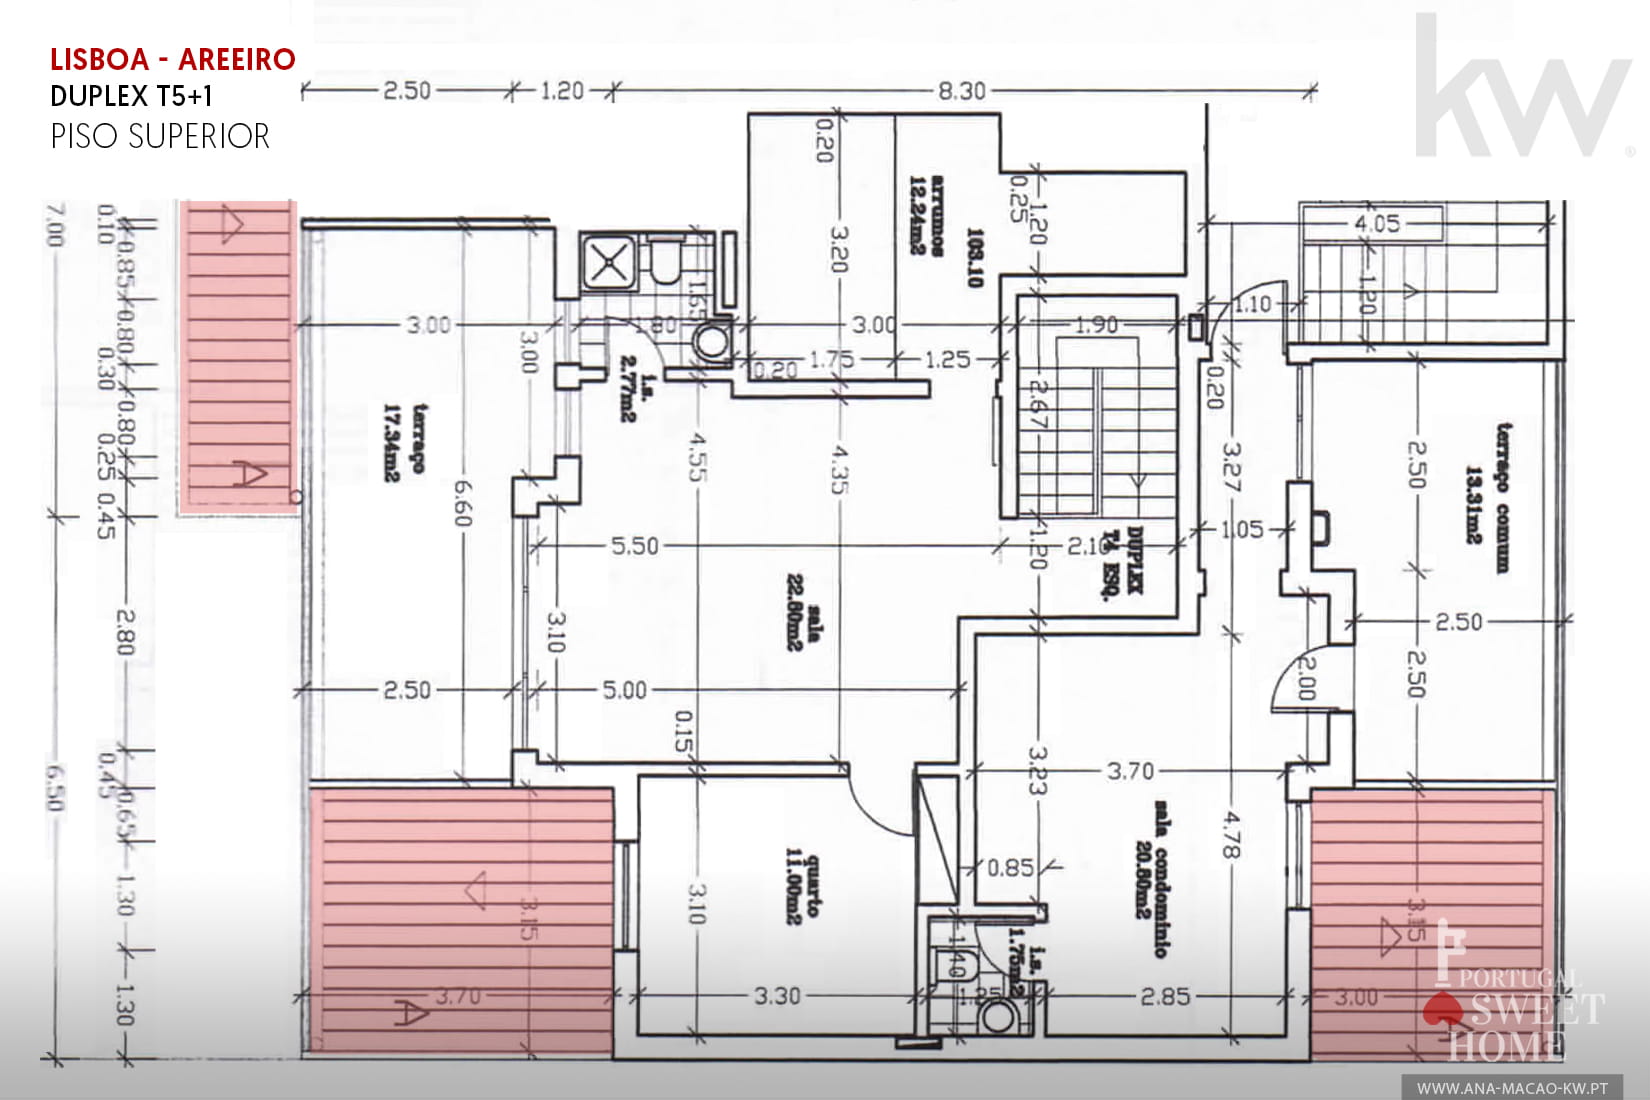 Duplex upper floor plan